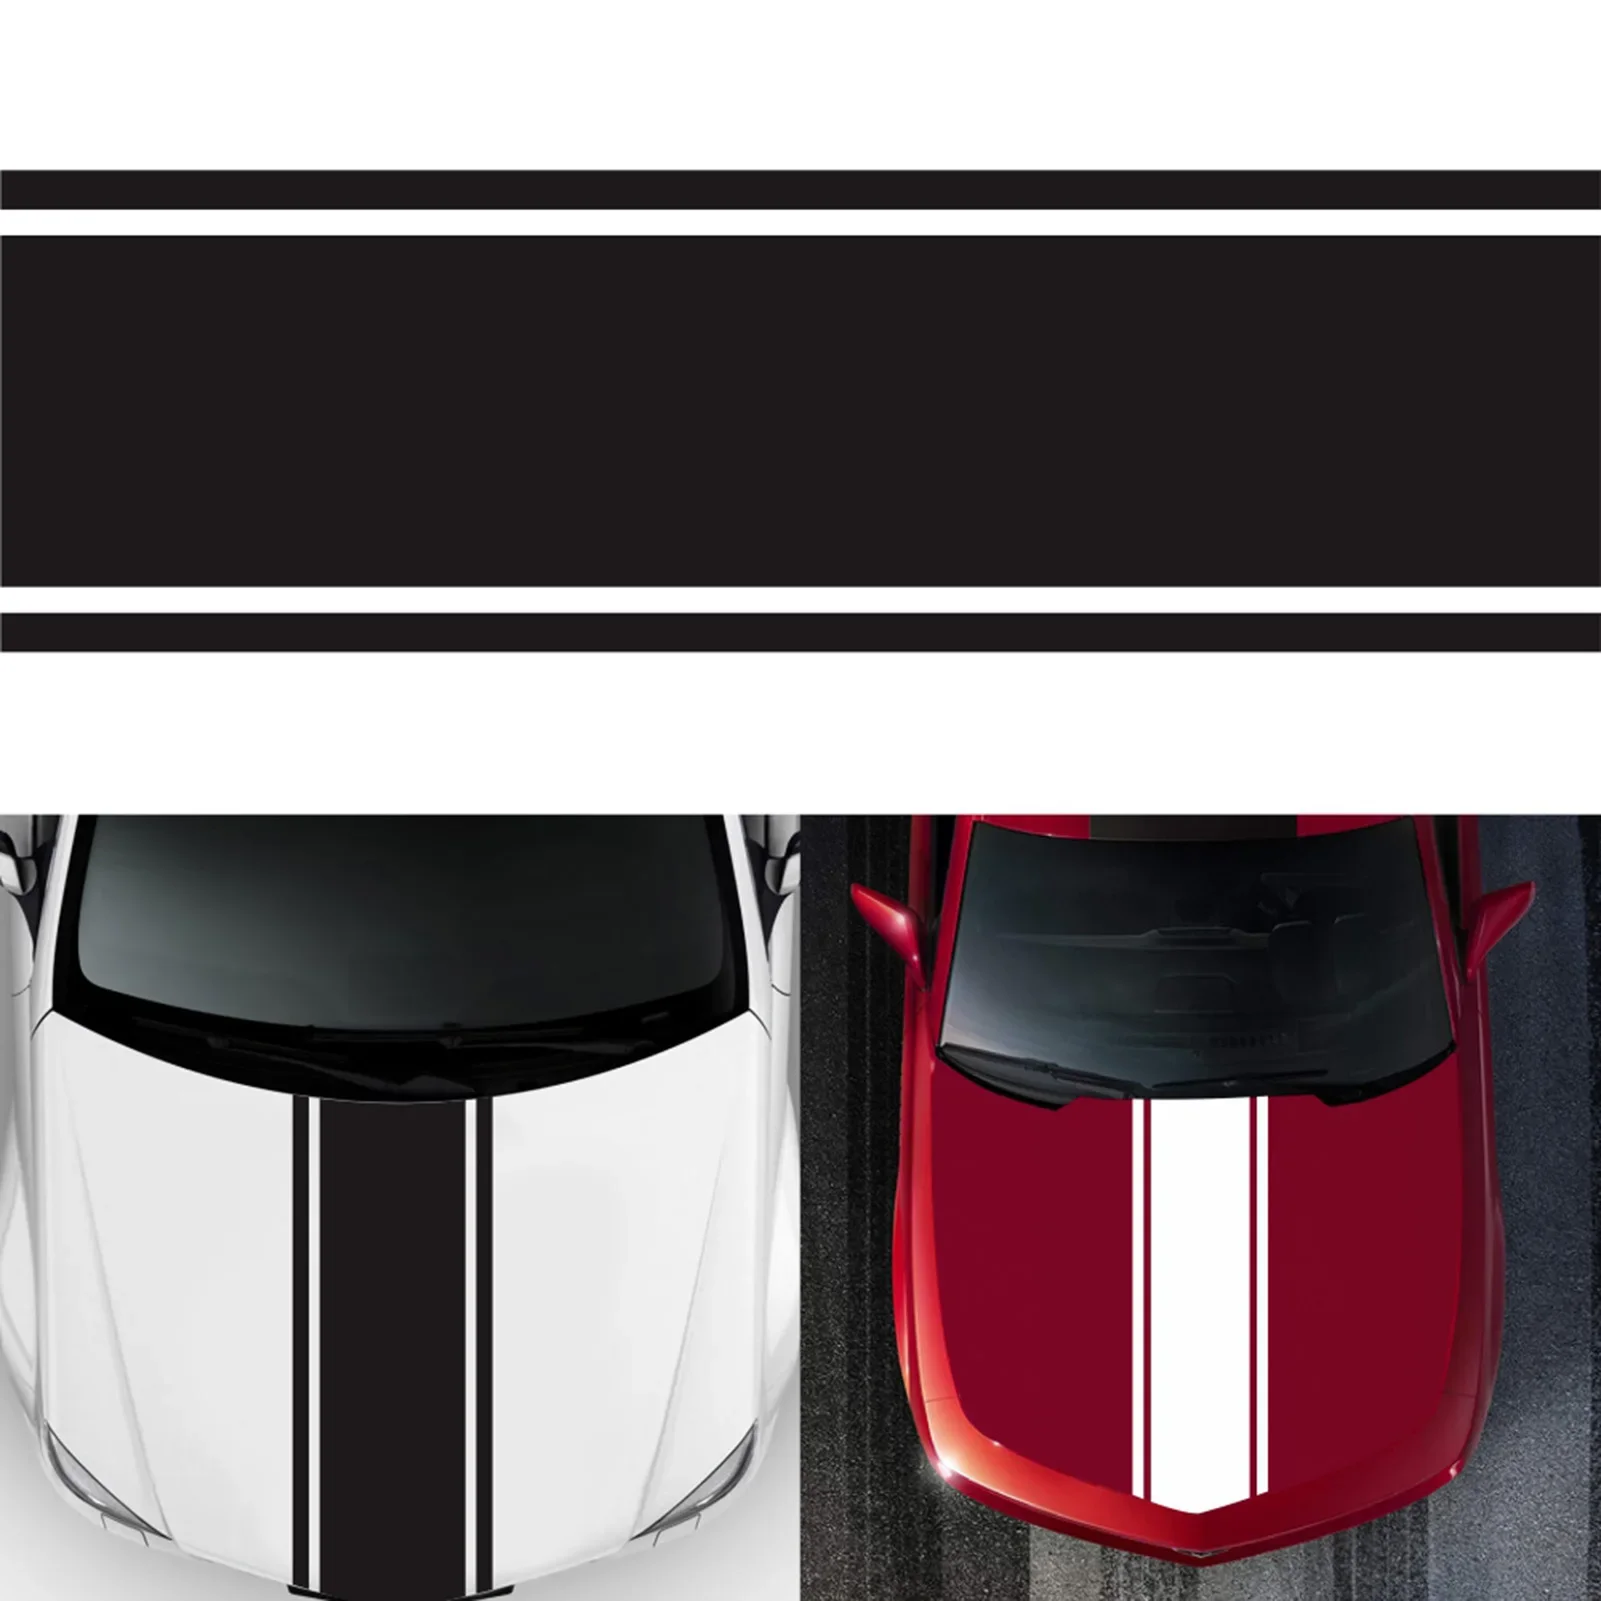  Наклейка на капот автомобиля Универсальные полосы для автогонок Боковые виниловые наклейки с модифицированной полосой